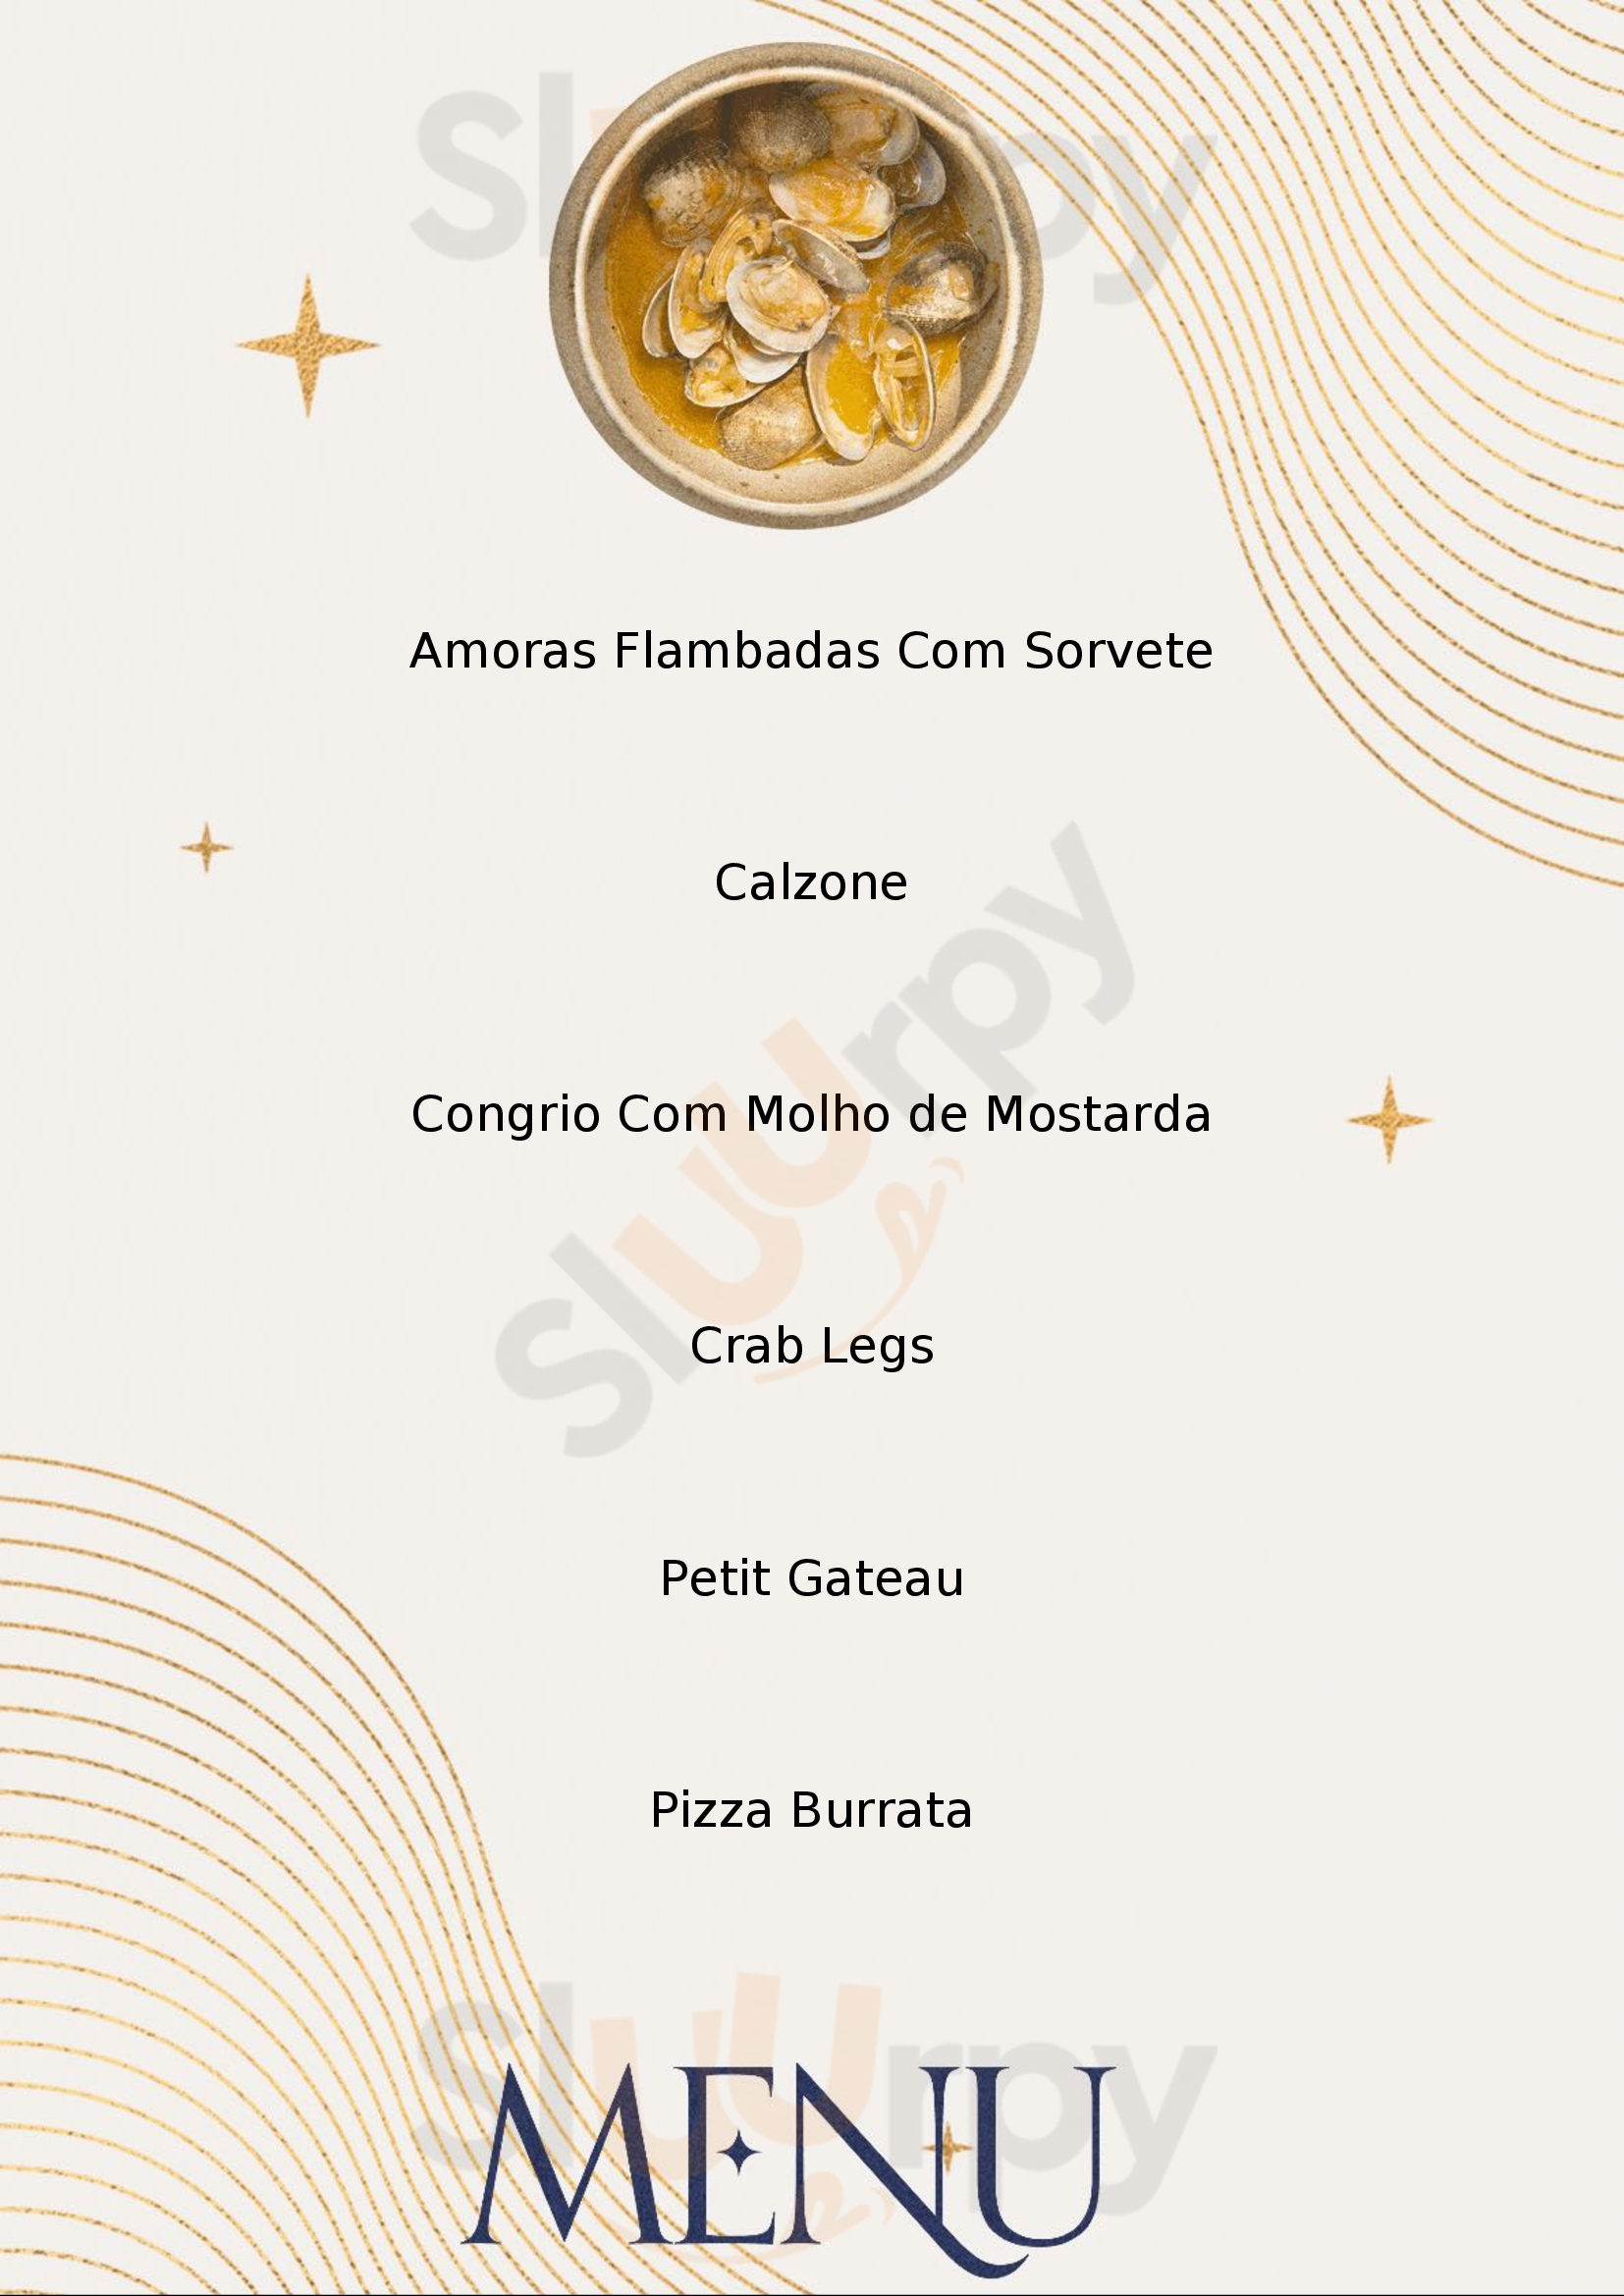 Carolla Pizza D.o.c. - Santa Felicidade Curitiba Menu - 1